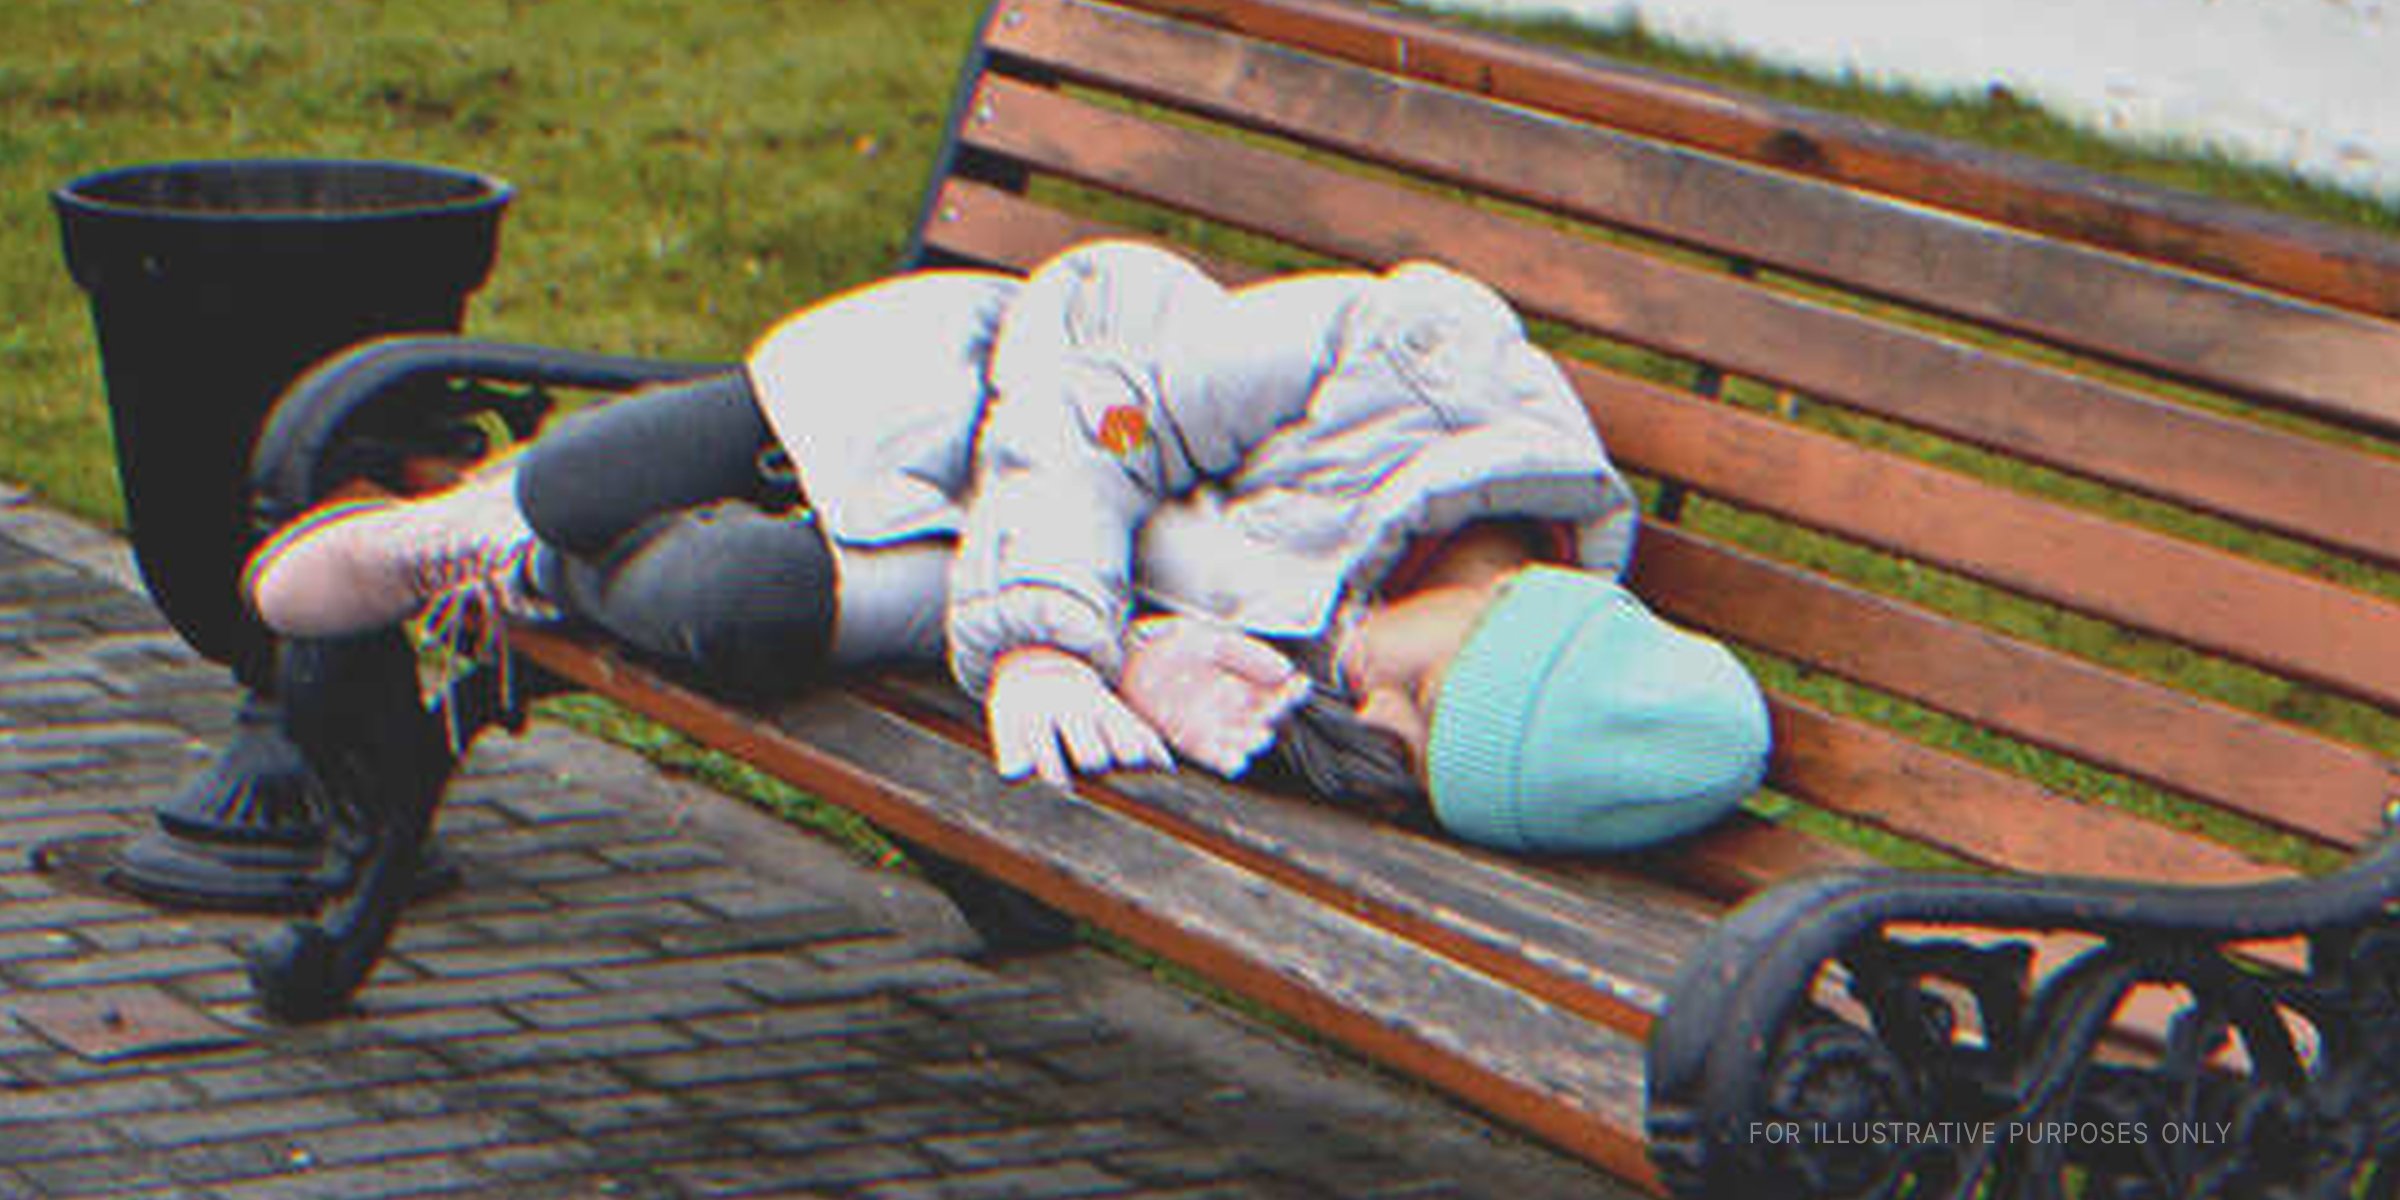 Schlafendes Kind auf einer Parkbank | Quelle: Shutterstock.com